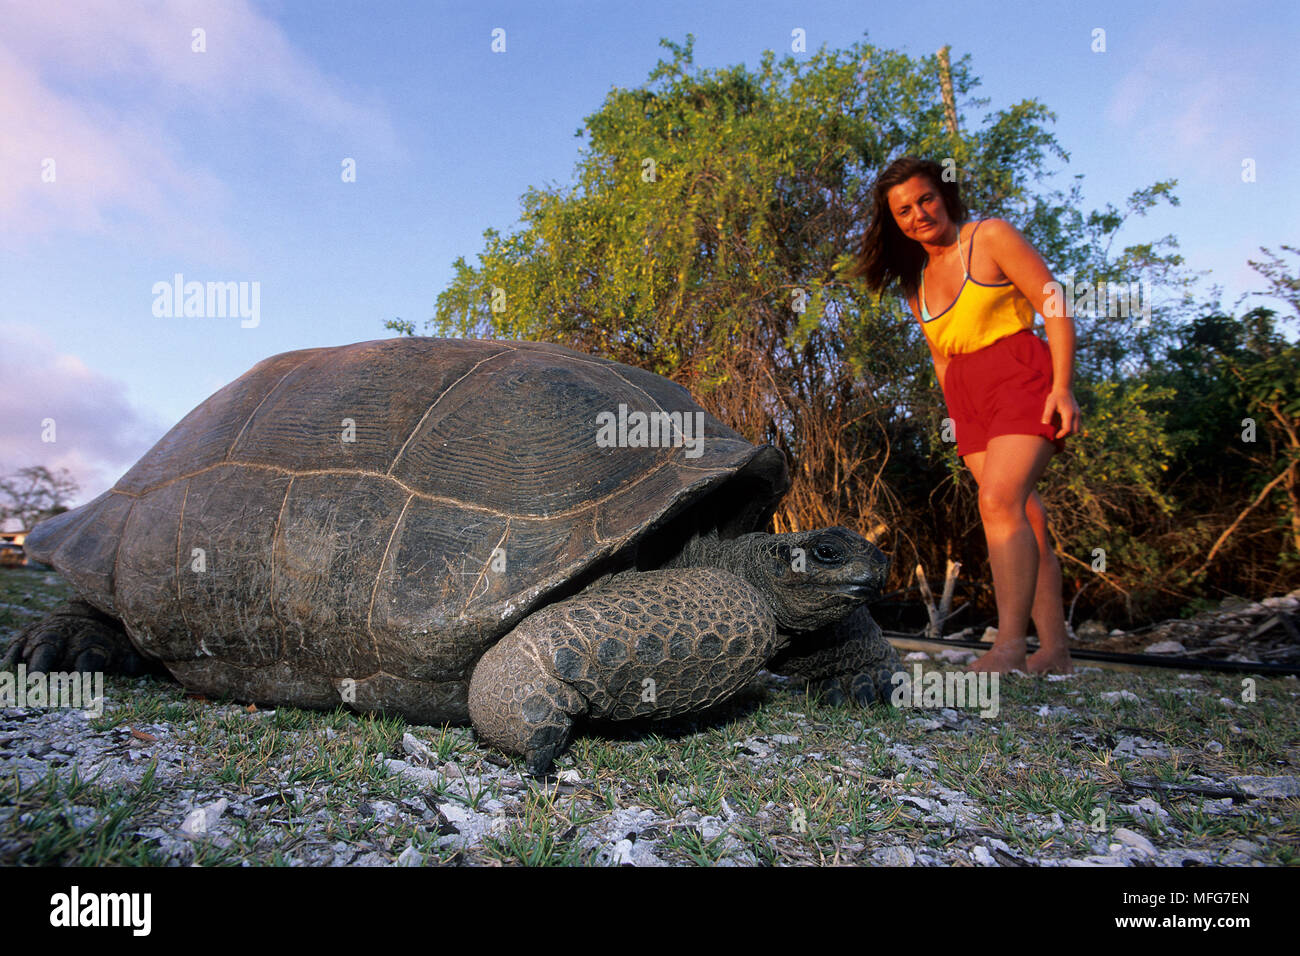 Donne in cerca di una tartaruga gigante, Geochelone gigantea, Aldabra Atoll, patrimonio mondiale naturale, Seychelles, Oceano Indiano Data: 24.06.08 RIF: ZB777 Foto Stock